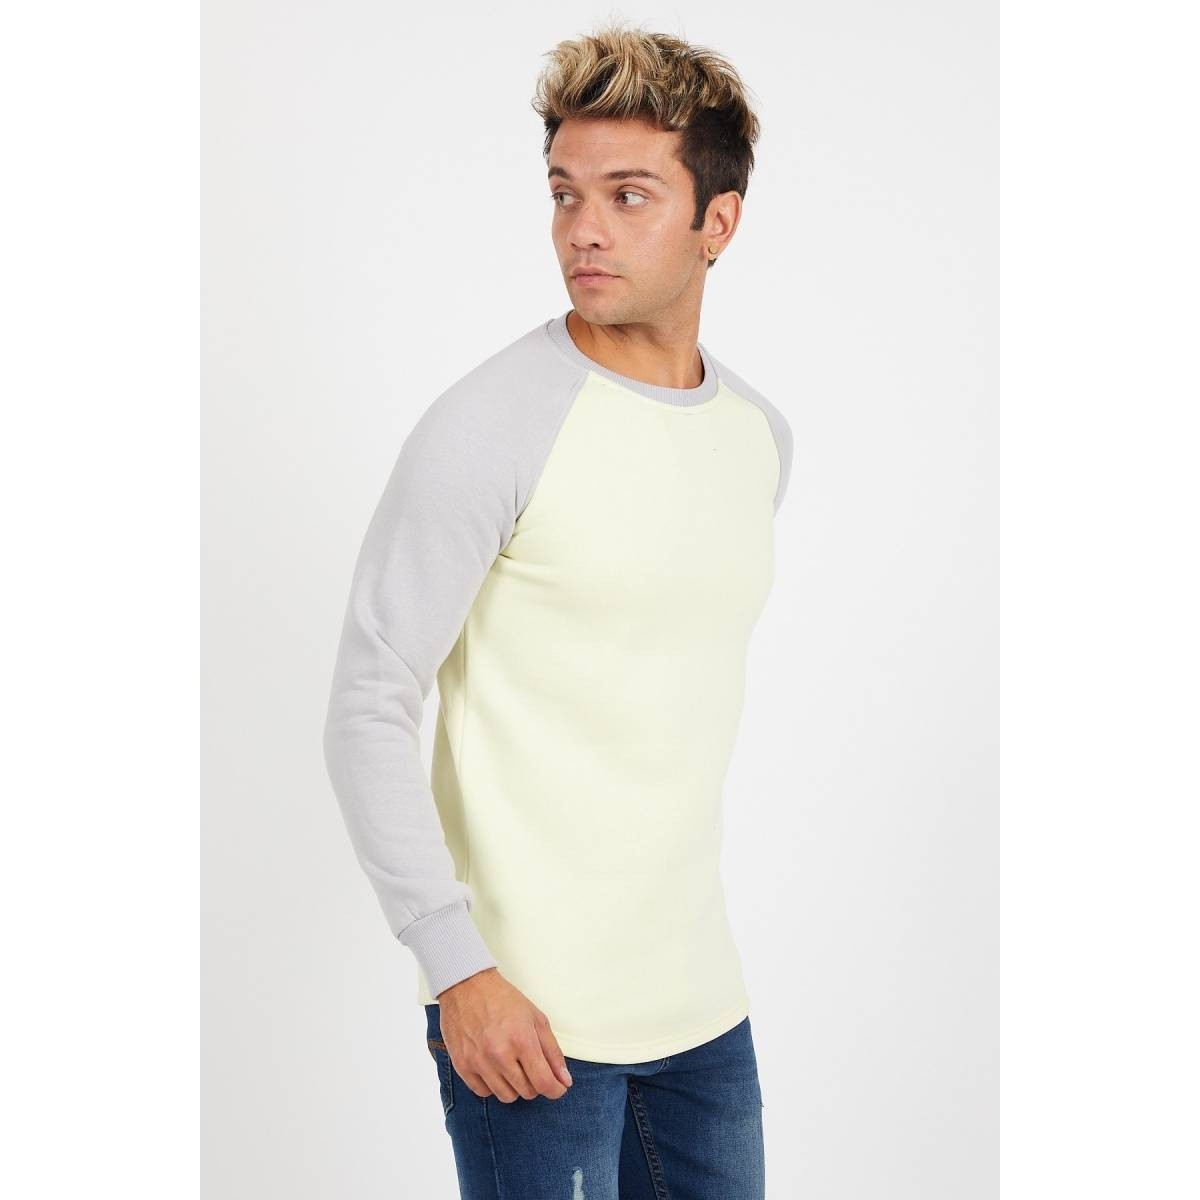 Flo Erkek Reglan Kol Sarı Sweatshirt - 61029. 2